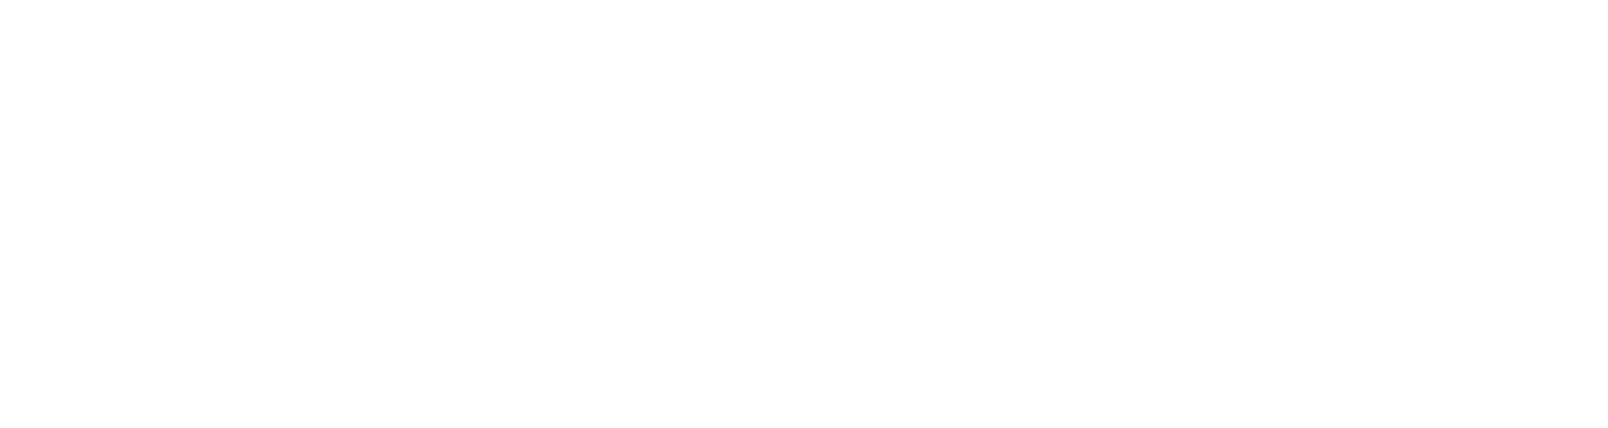 IDEX logo pour fonds sombres (PNG transparent)